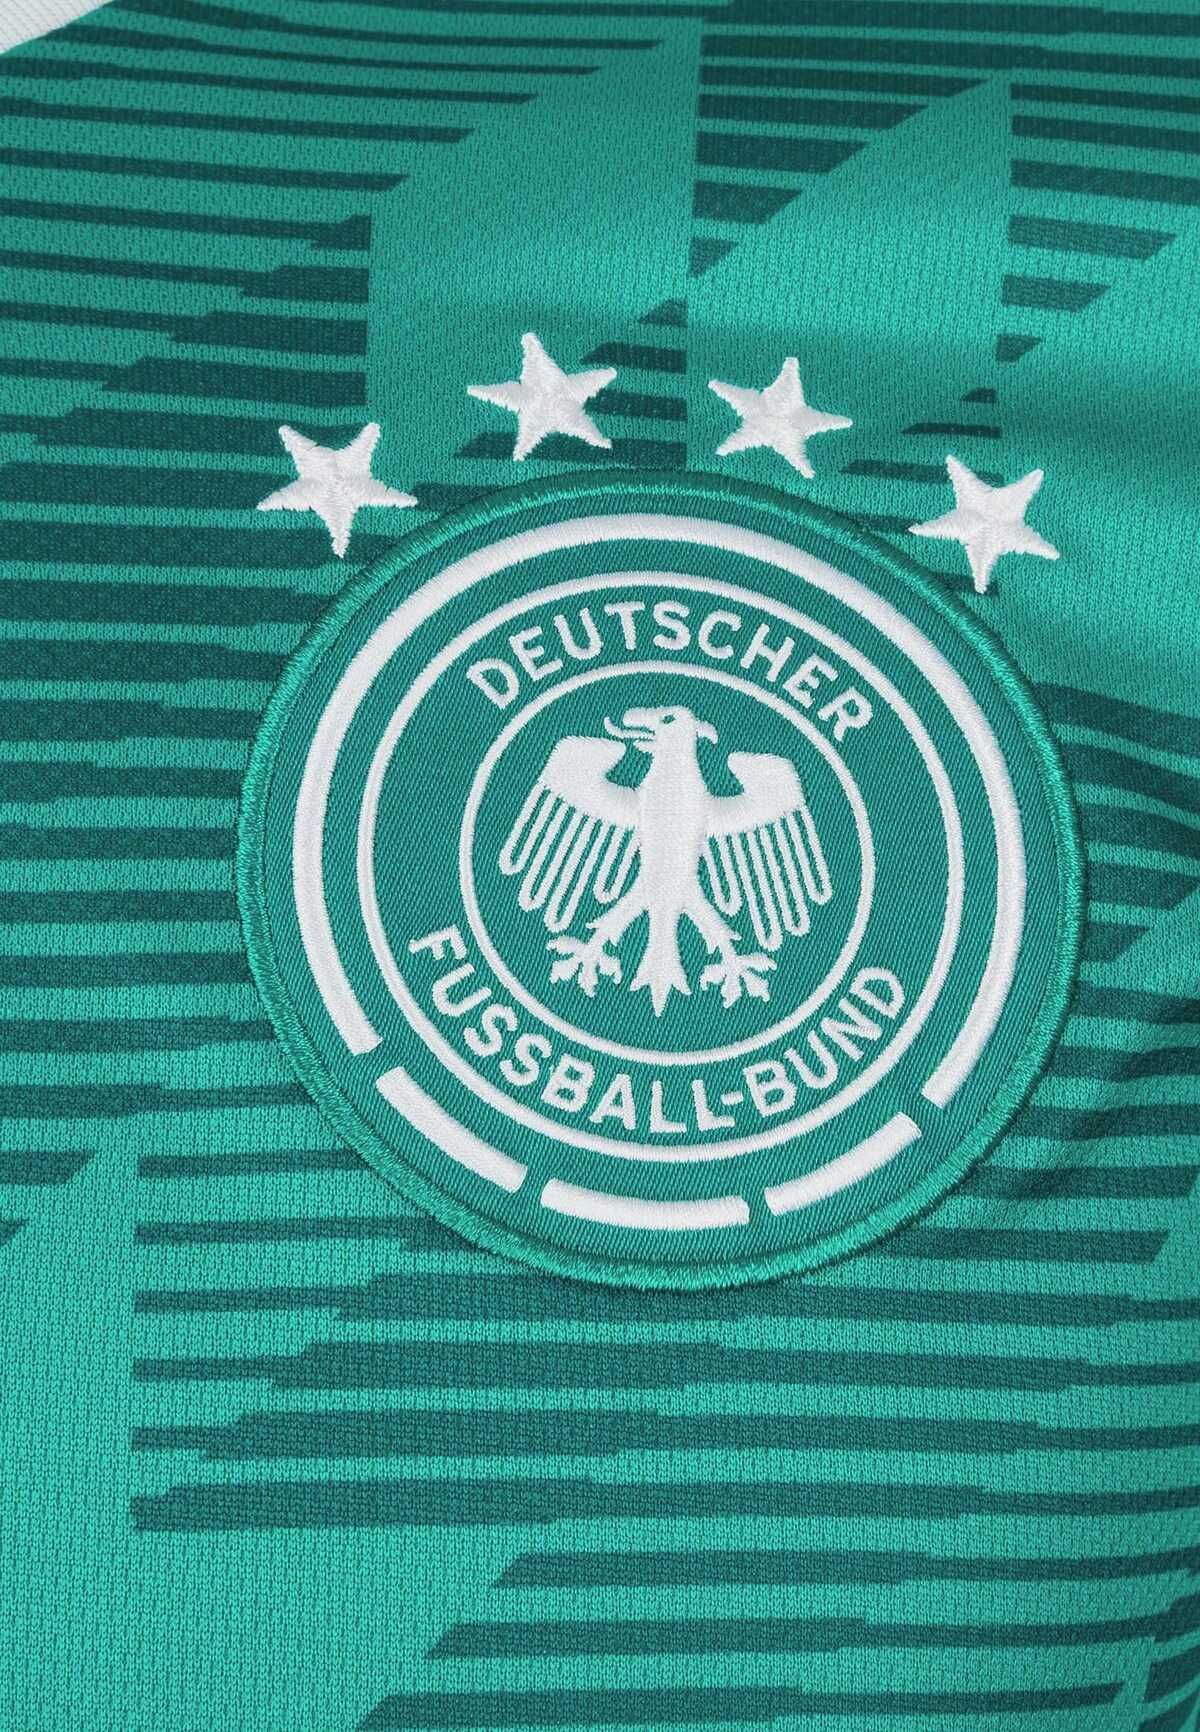 Футболка Adidas DFB Away 2018_Официальная Коллекция (оригинал)